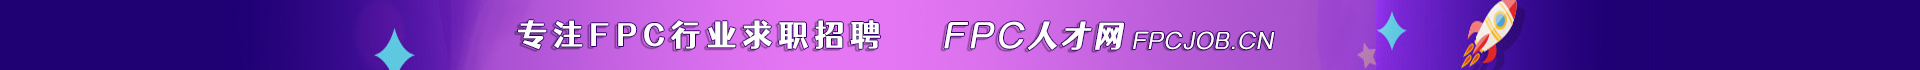 FPC人才网